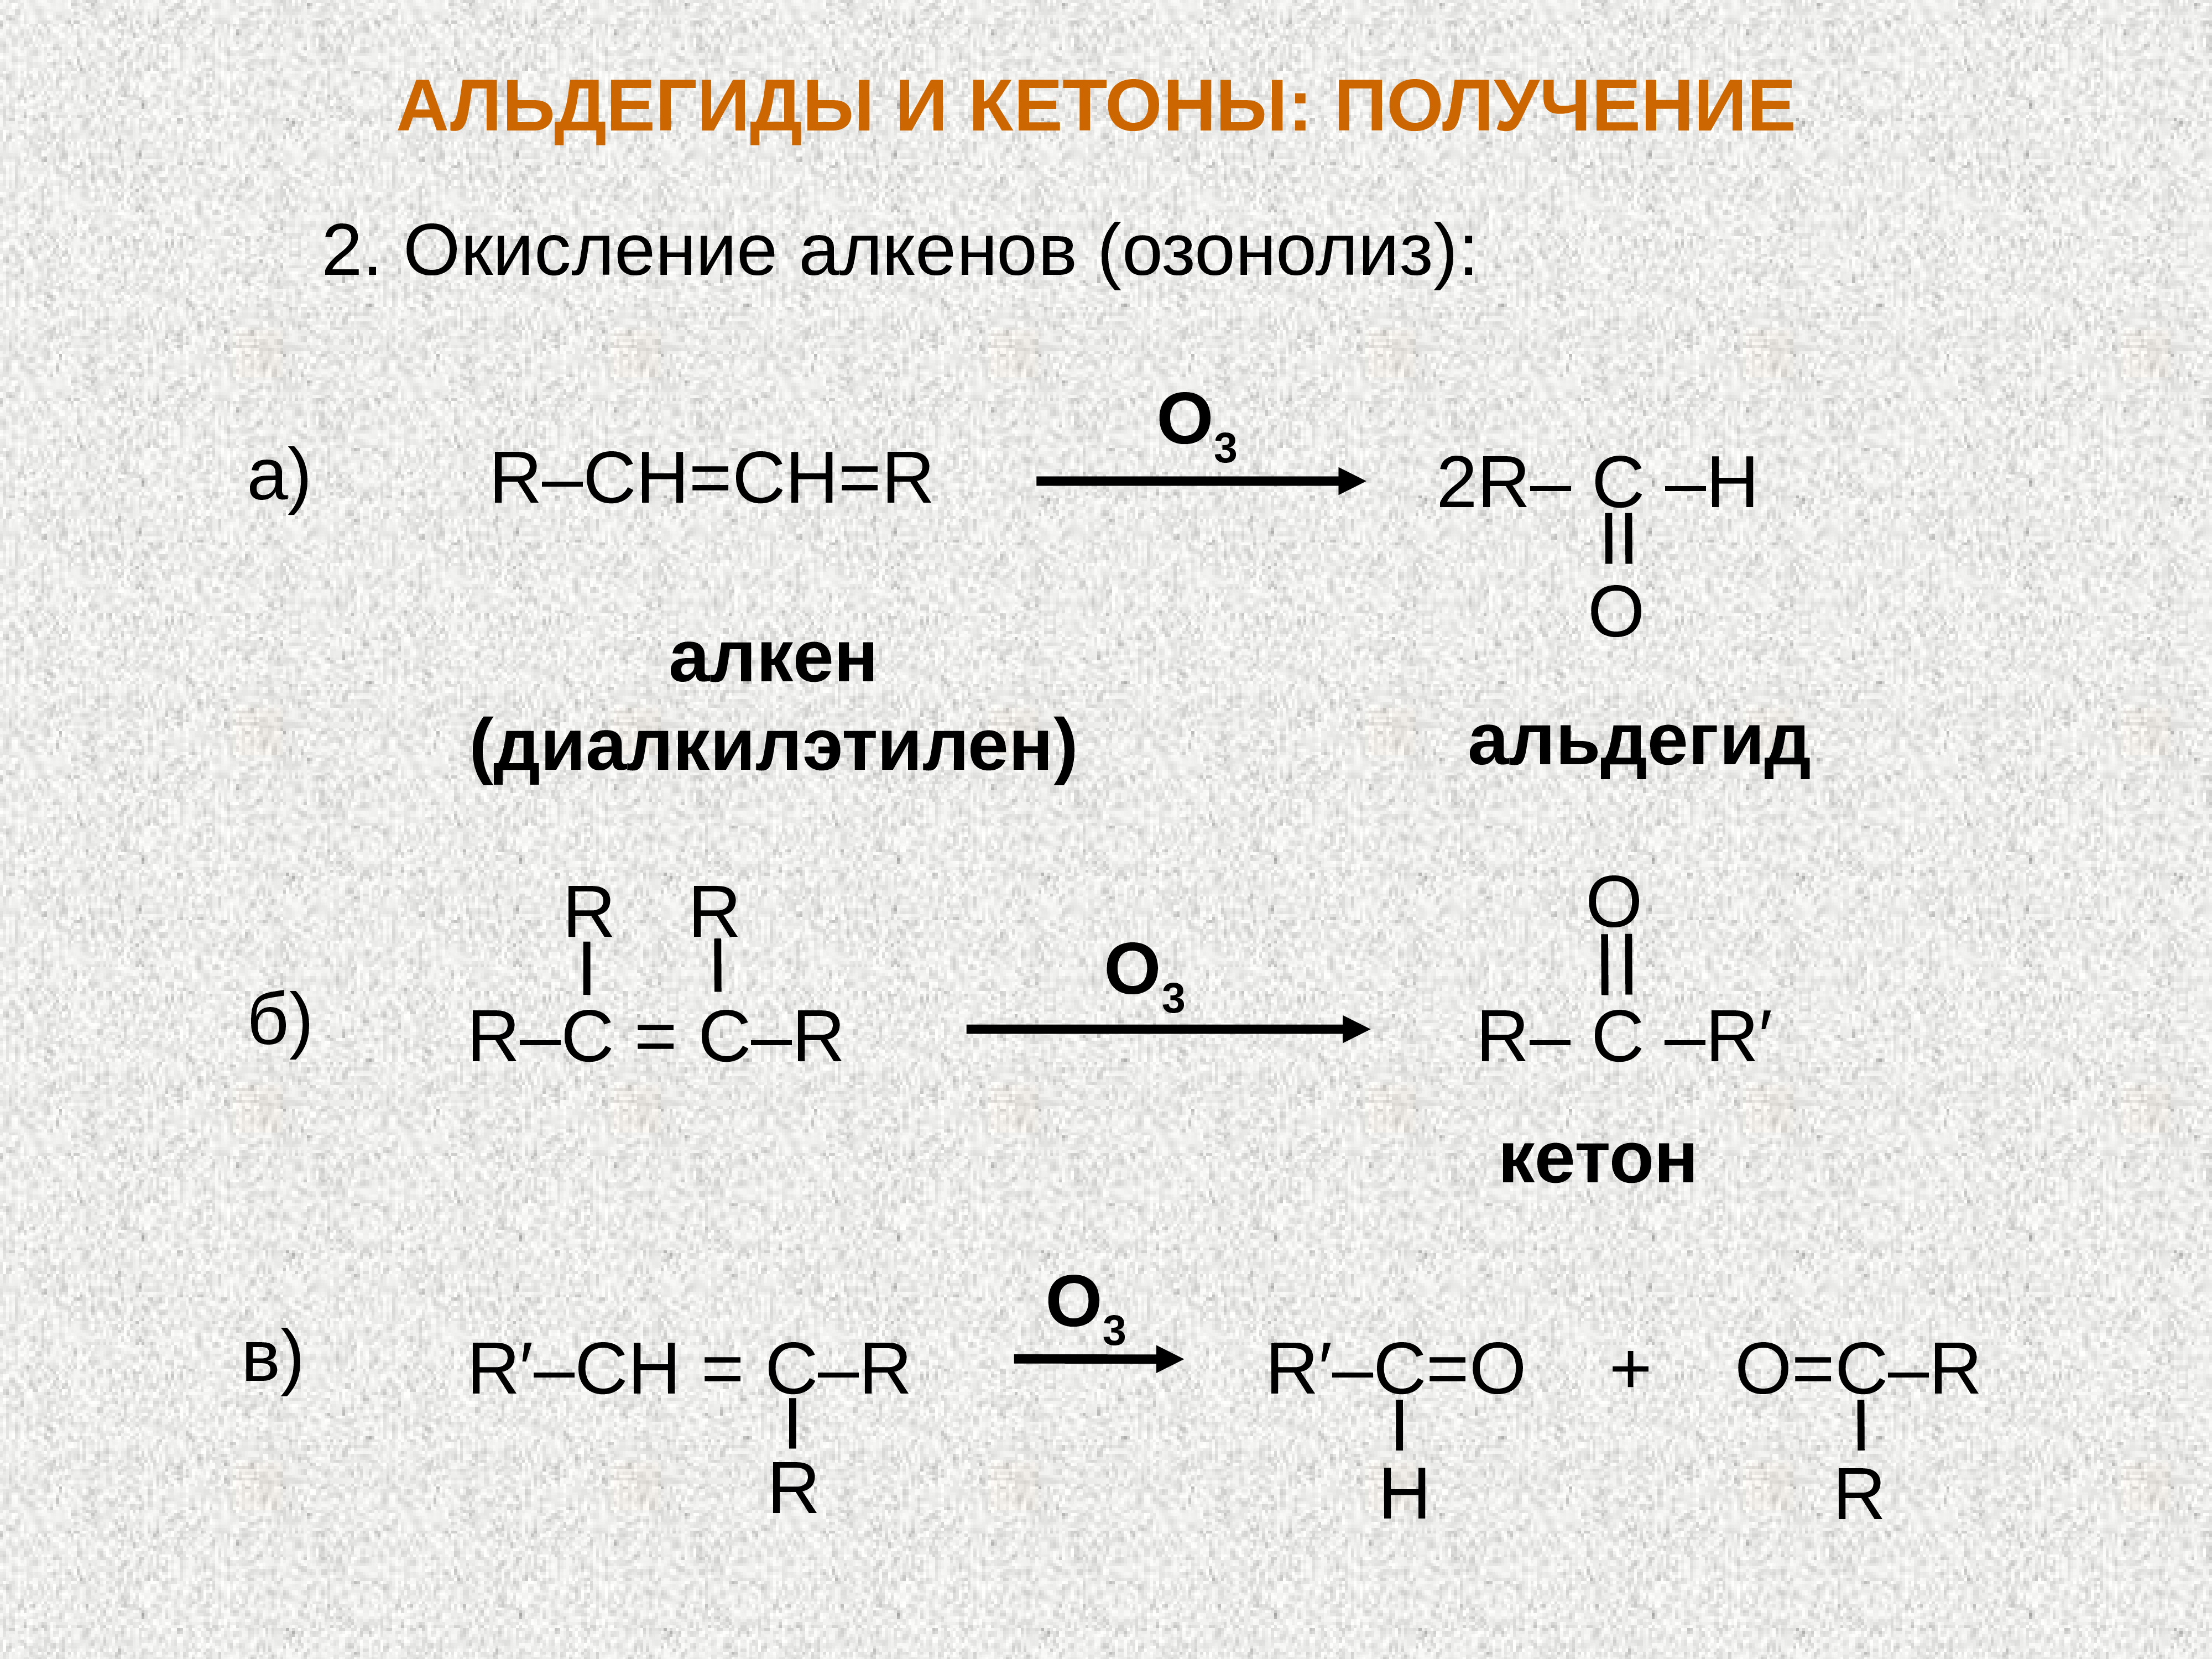 Кетон алкан. Получение кетона из алкенов. Получение кетона из алкена. Получение альдегидов из алкенов. Синтез кетонов из алкенов.